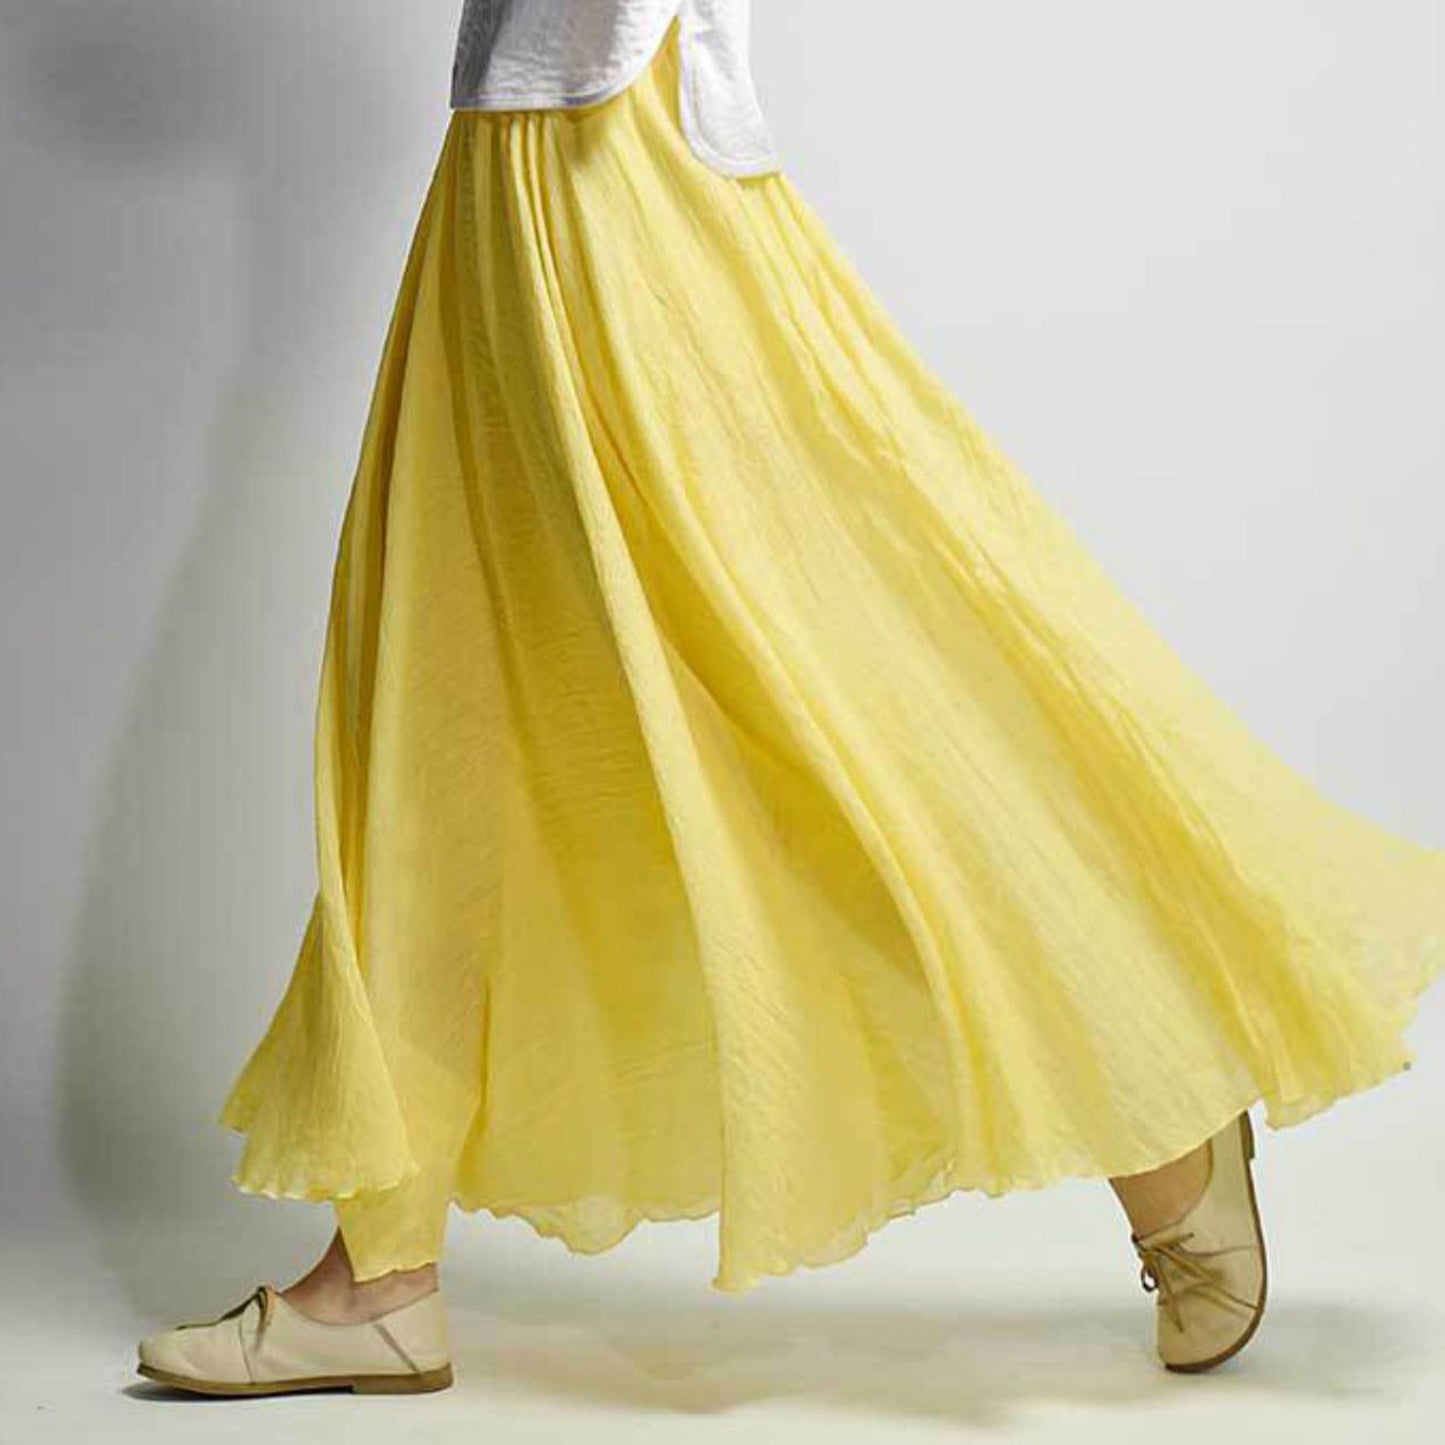 Cotton Linen Style Skirt, Soft And Flowing Skirt, Travel Skirt, Beach Skirt, Gift For Daughter, Pink Skirt, Custom Size